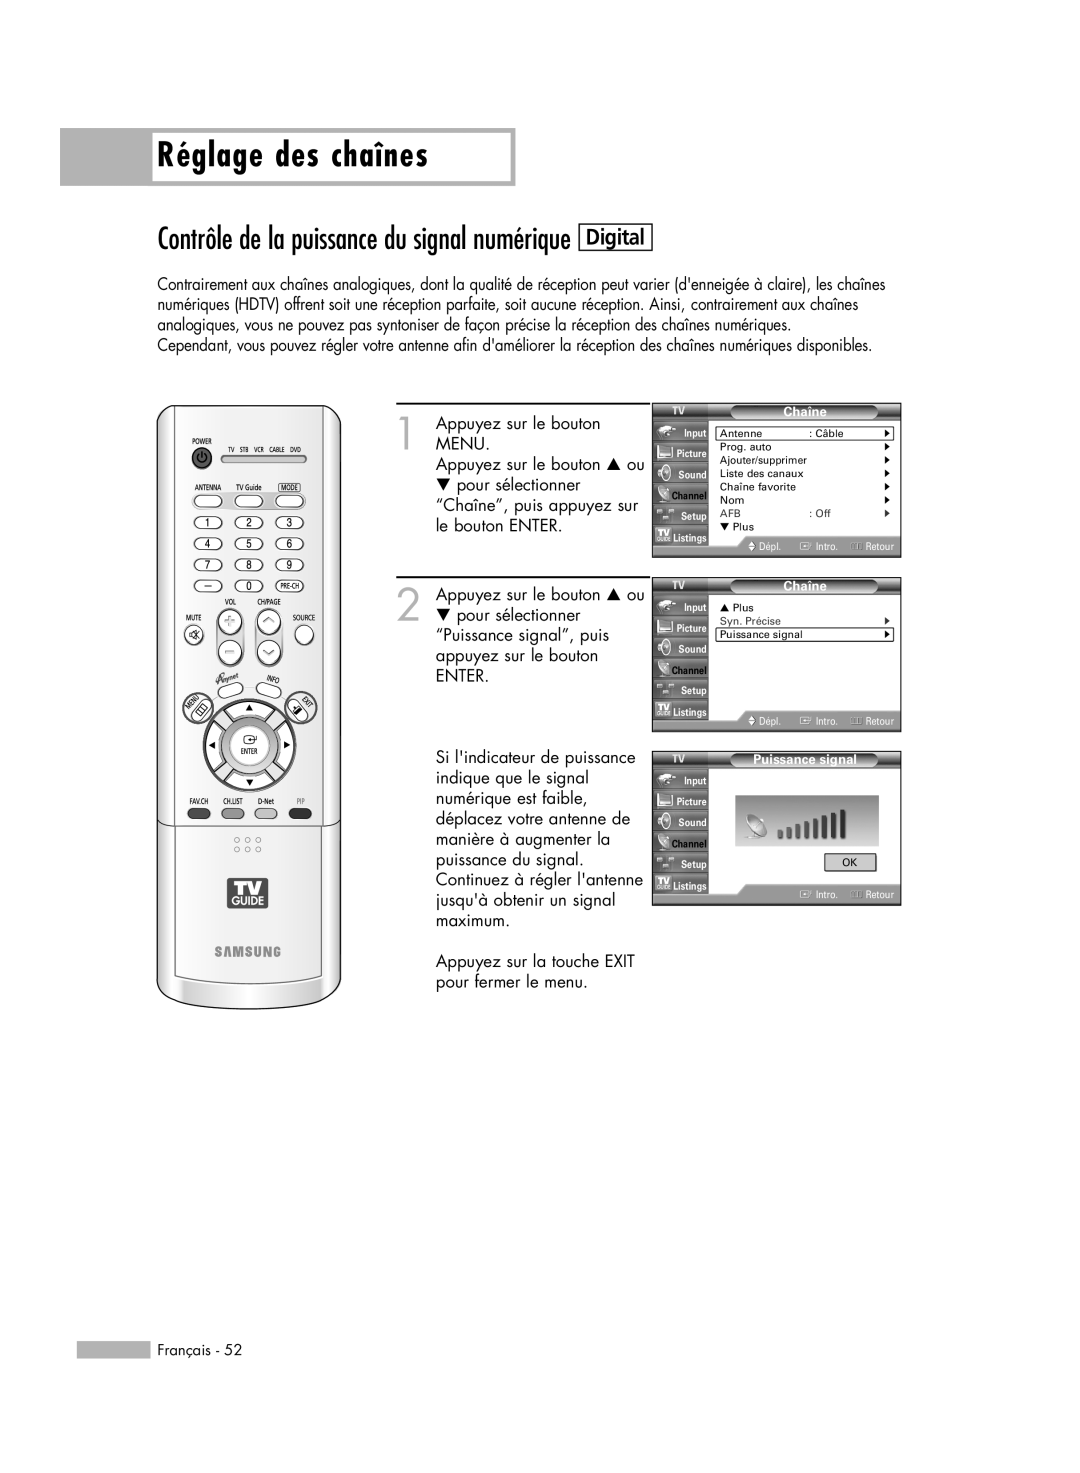 Samsung HL-R6178W, HL-R5078W, HL-R5678W manual Digital, Contrôle de la puissance du signal numérique, Réglage des chaînes 